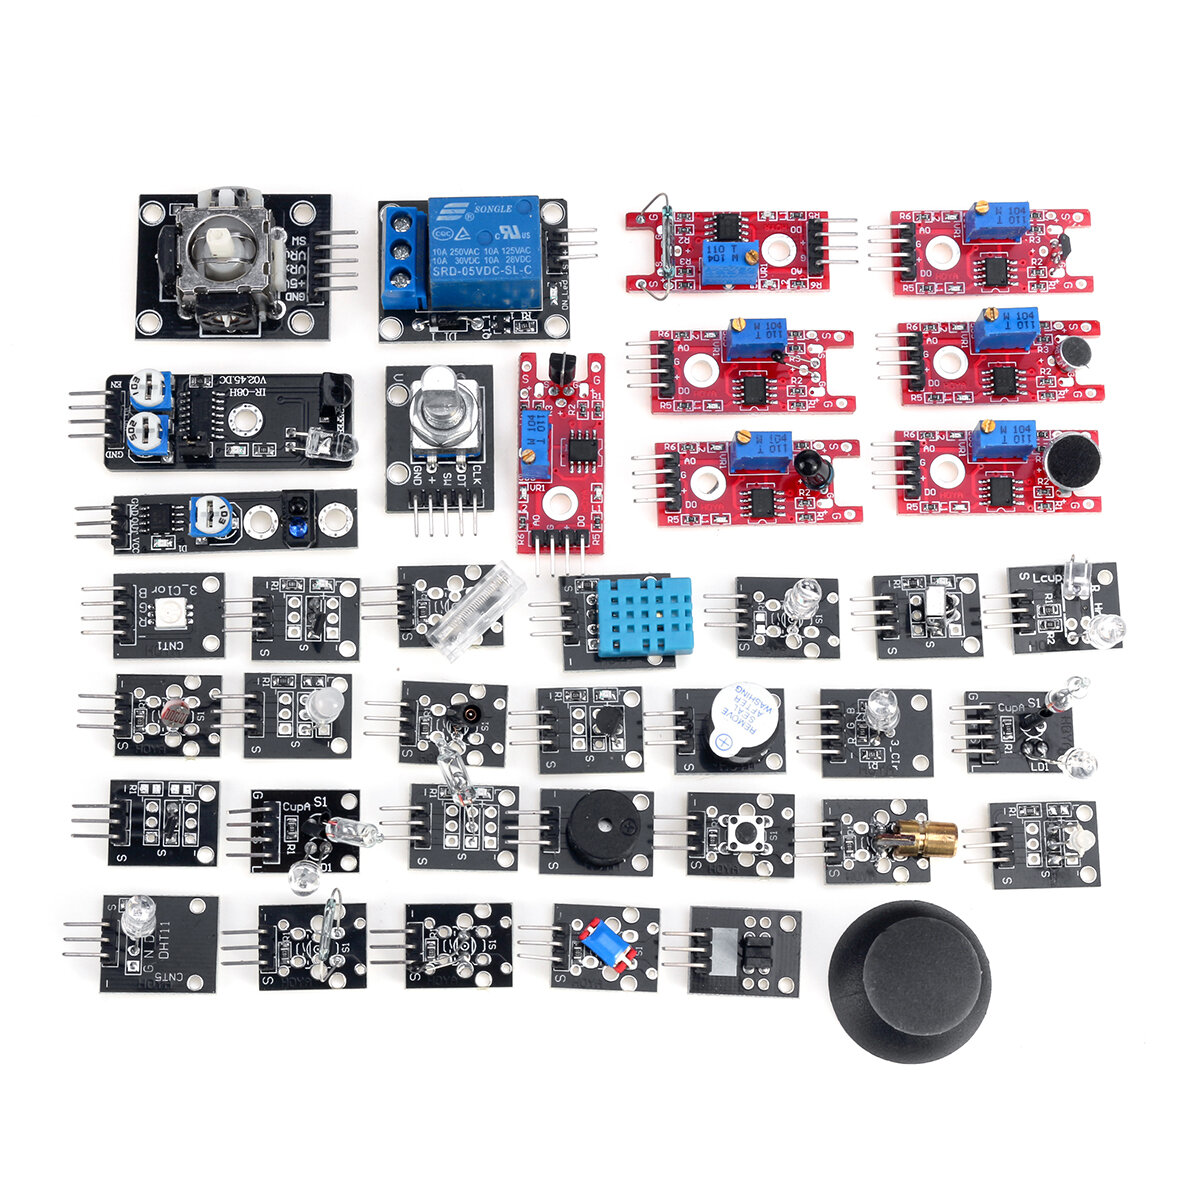 45 In 1 Sensor Module Starter Kit 37 Sensor Kit Updated For Arduino Education